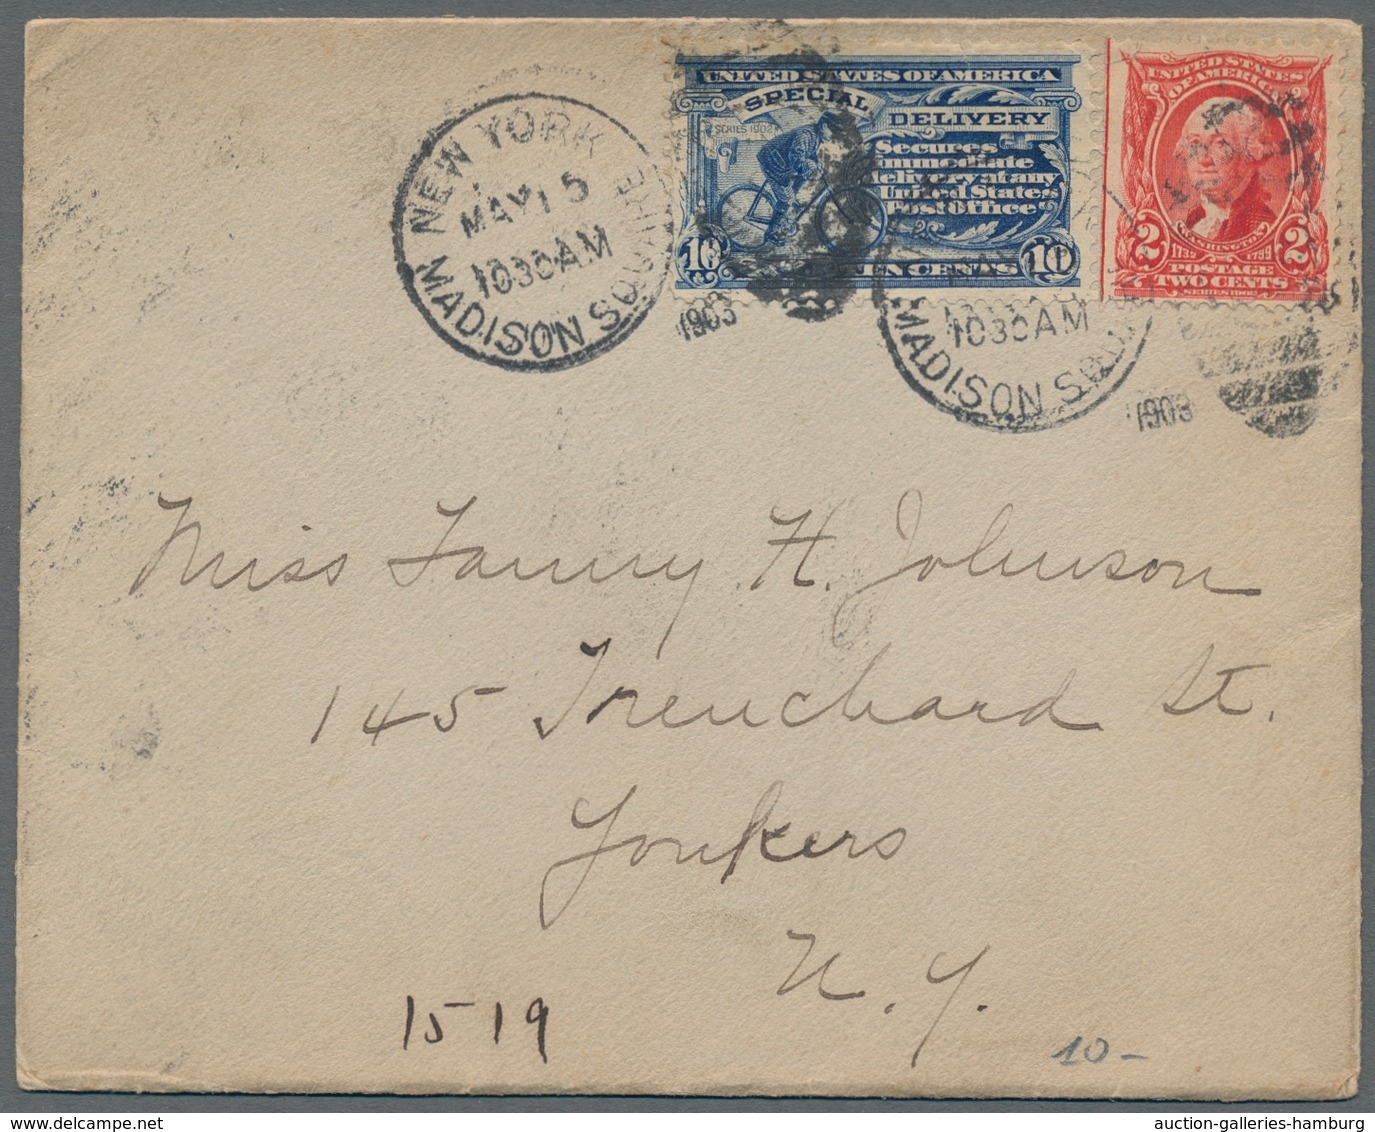 Vereinigte Staaten von Amerika: 1881-1935, kleine Partie aus sieben Briefen, davon fünf mit "Special